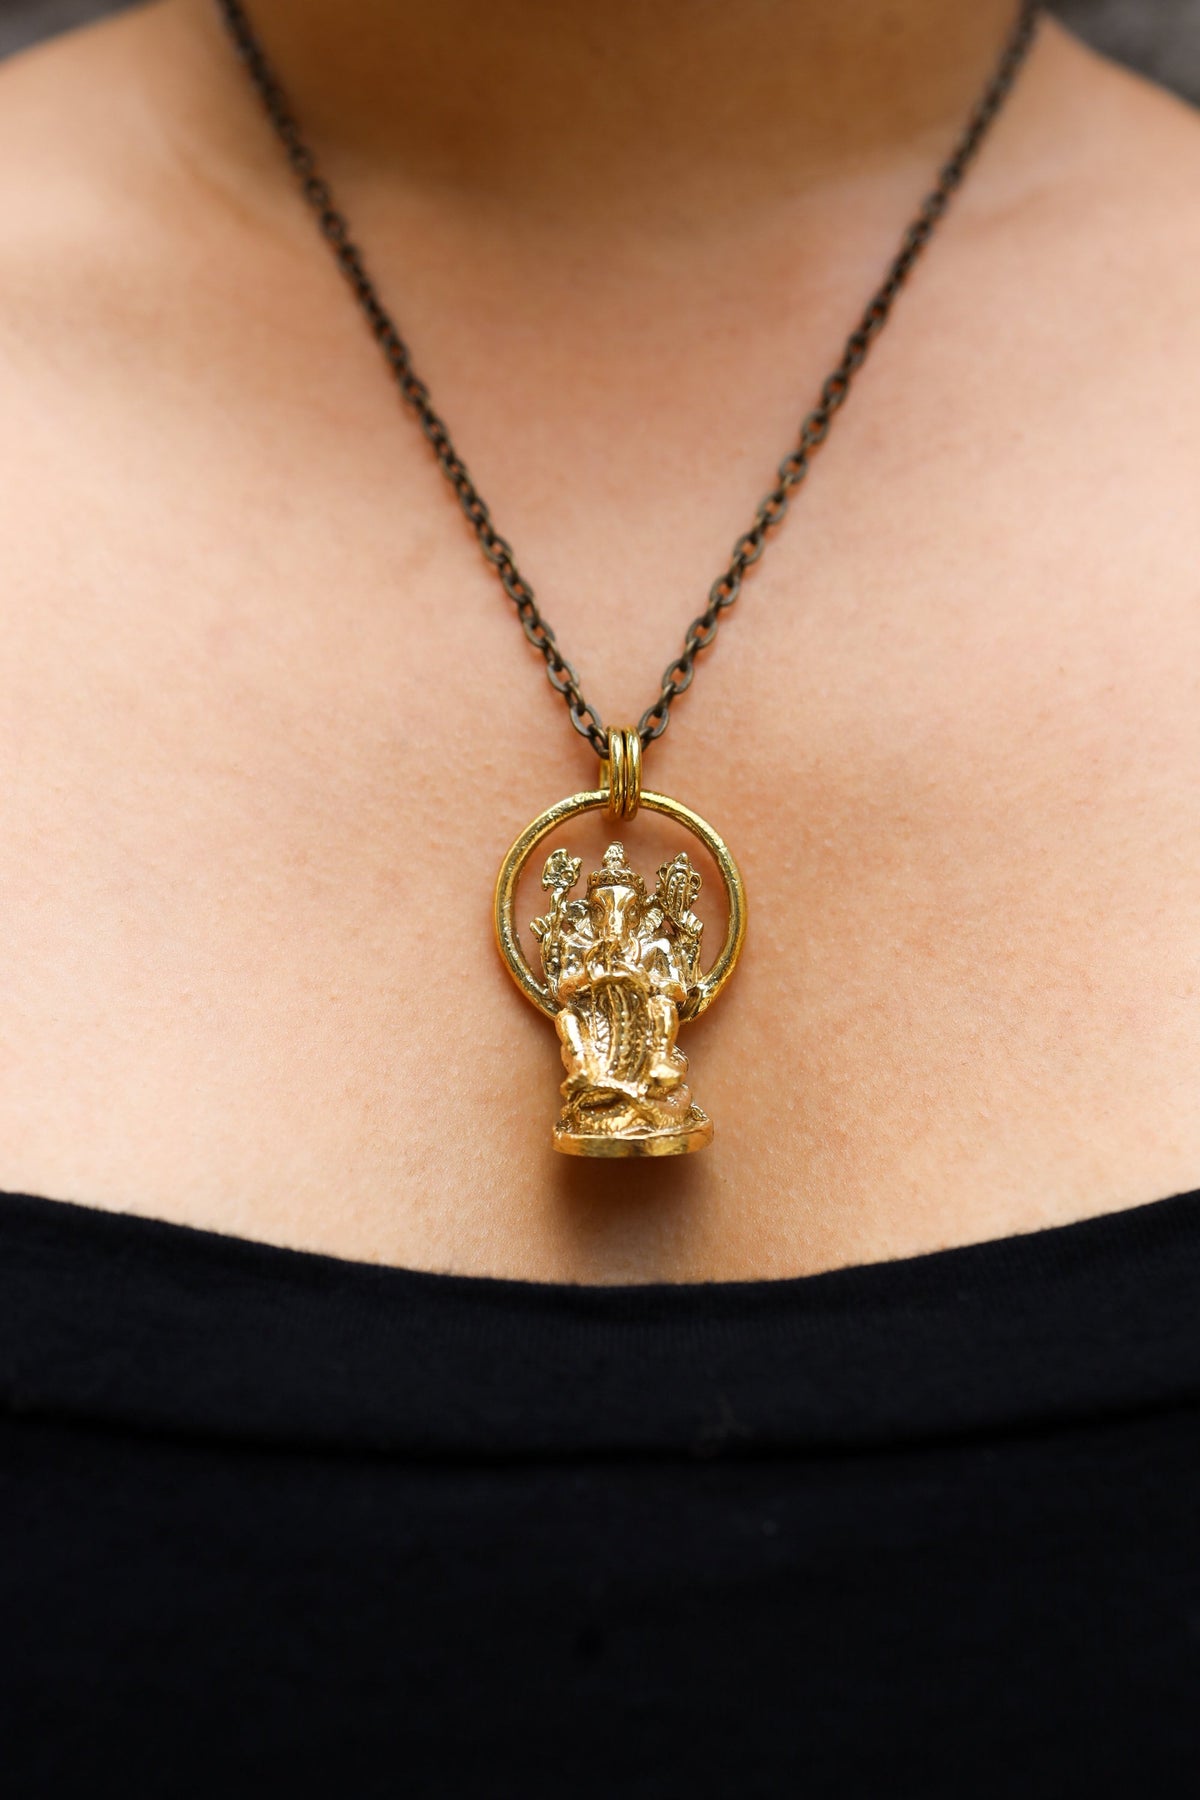 Cast Pendant with Radiant Ganesha Amulet - Gold Plated Brass Charm - Abundance & Protection, Hindu Symbolic Jewelry